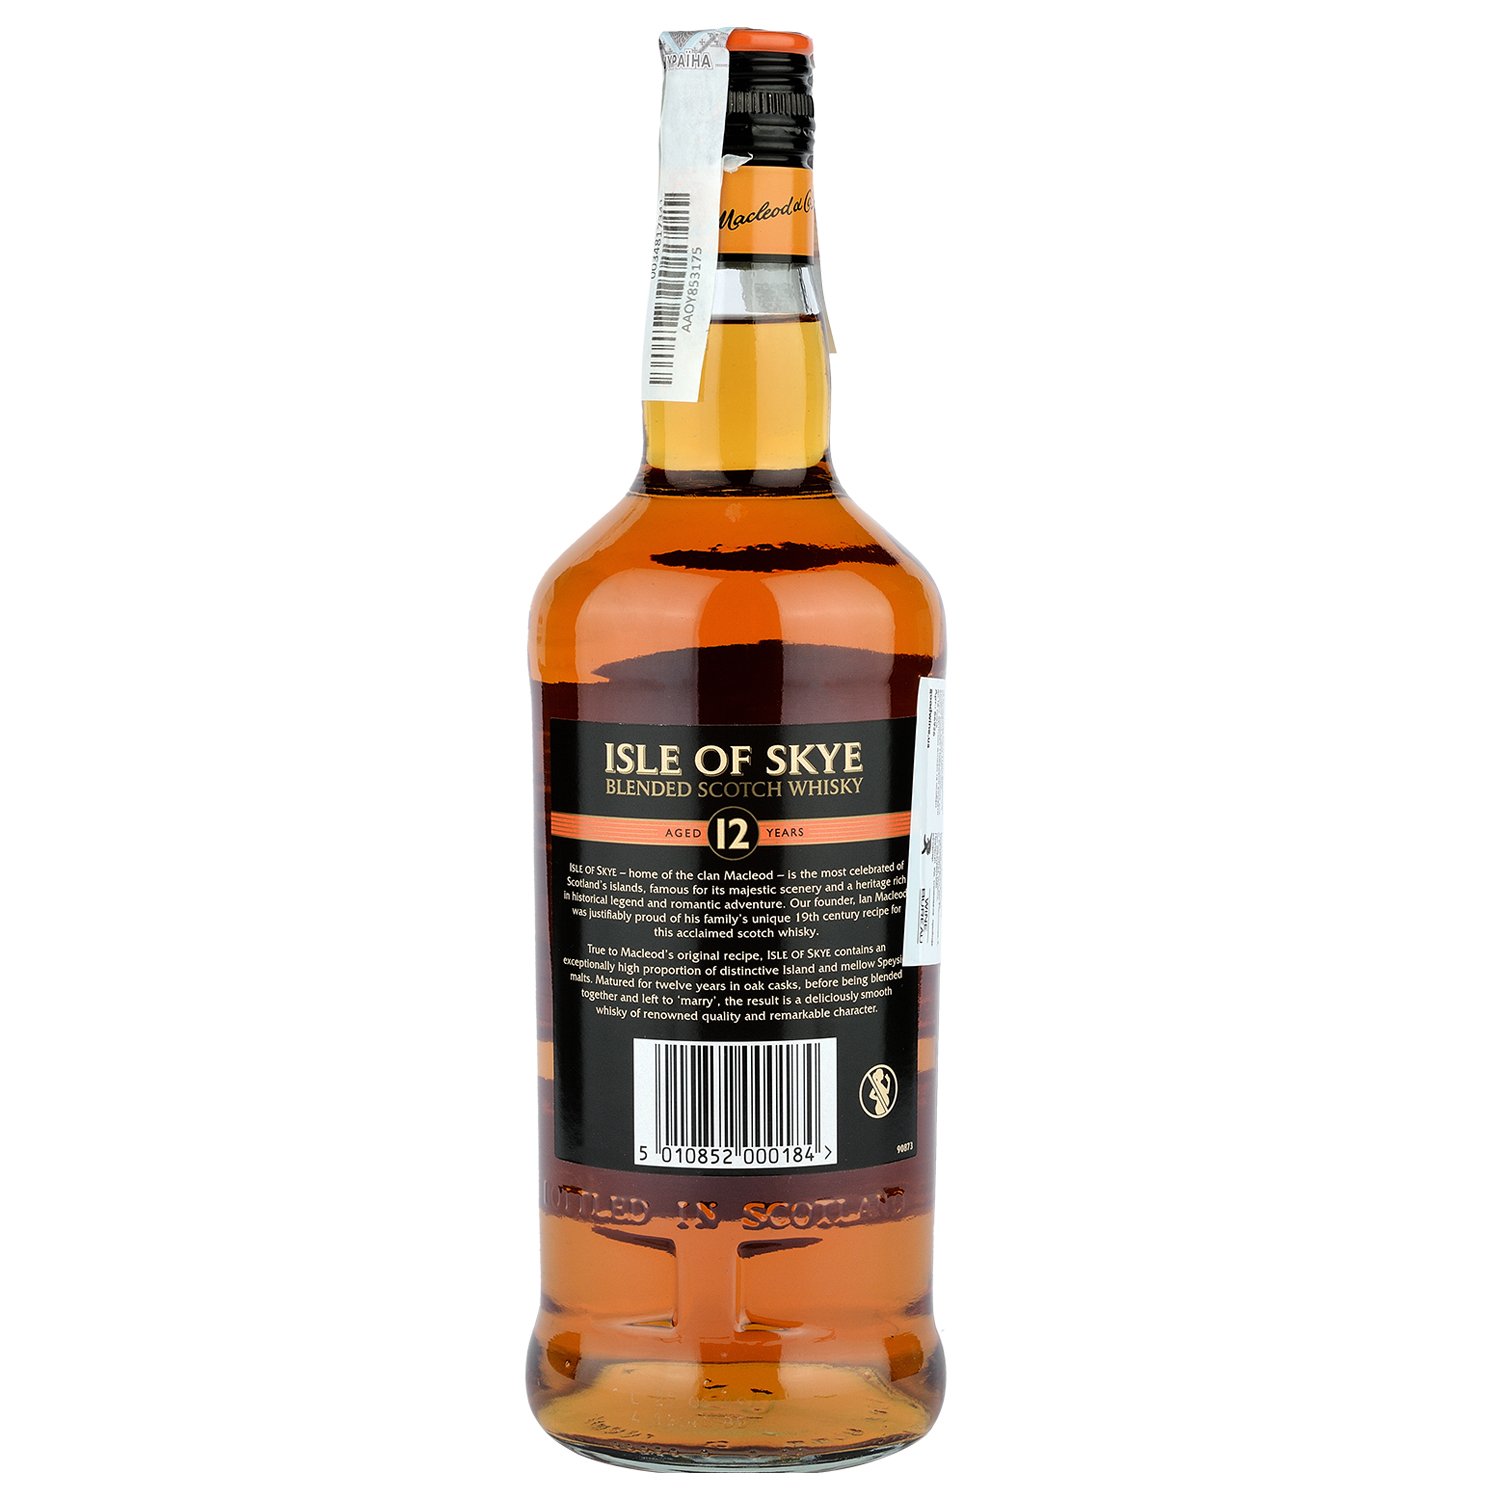 Віскі Isle of Skye Blended Scotch Whisky 12 yo, в подарунковій упаковці, 40%, 0,7 л - фото 2